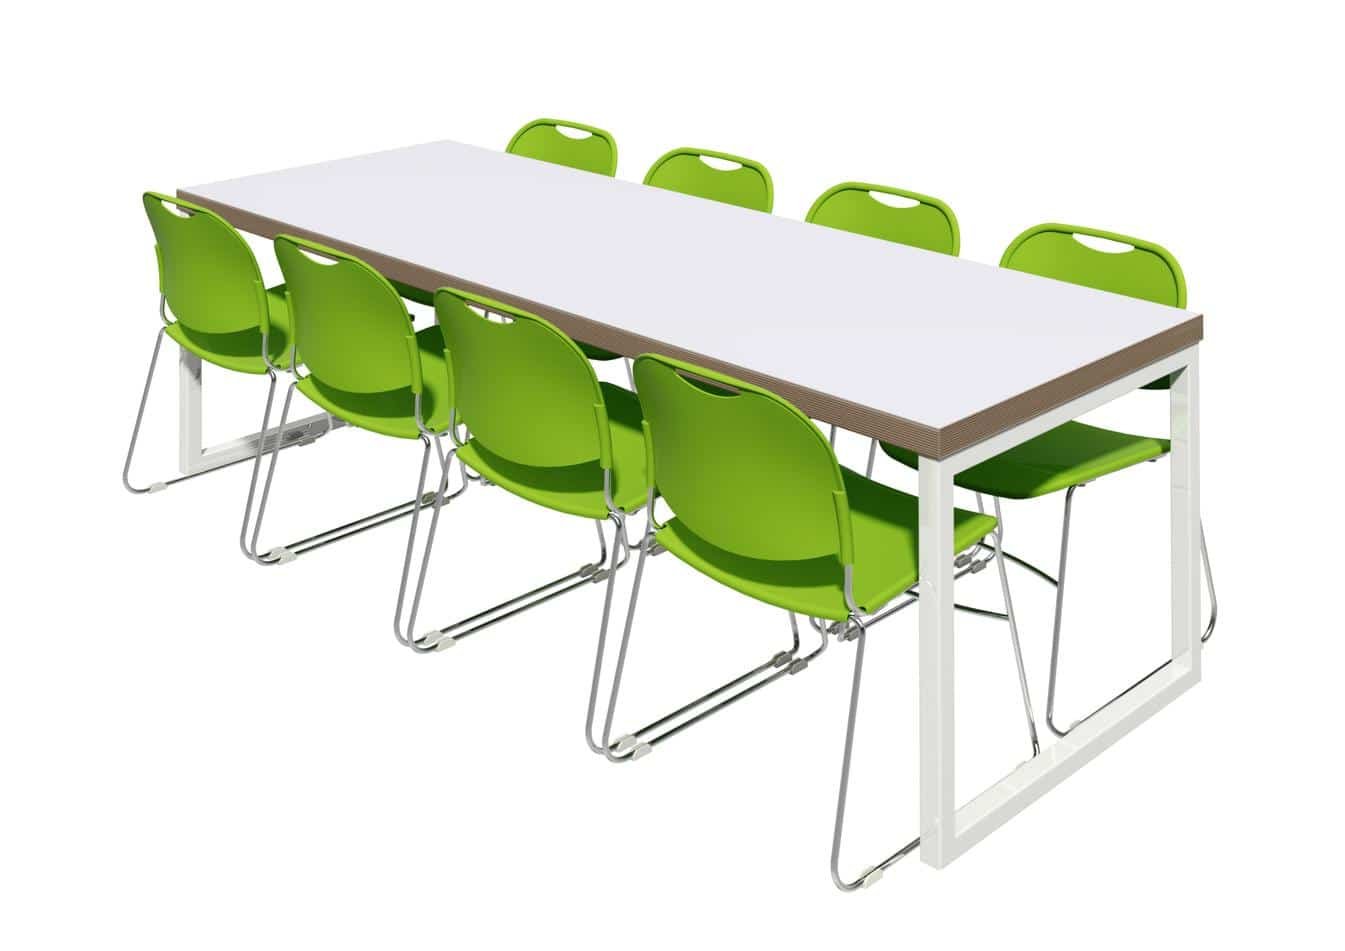 См групп столы. Стол для столовой 6-местный с табуретами габ разм 1500х700х640/730/760. Столы для школьной столовой. Стулья для школьной столовой. Столы и стулья для школьной столовой.